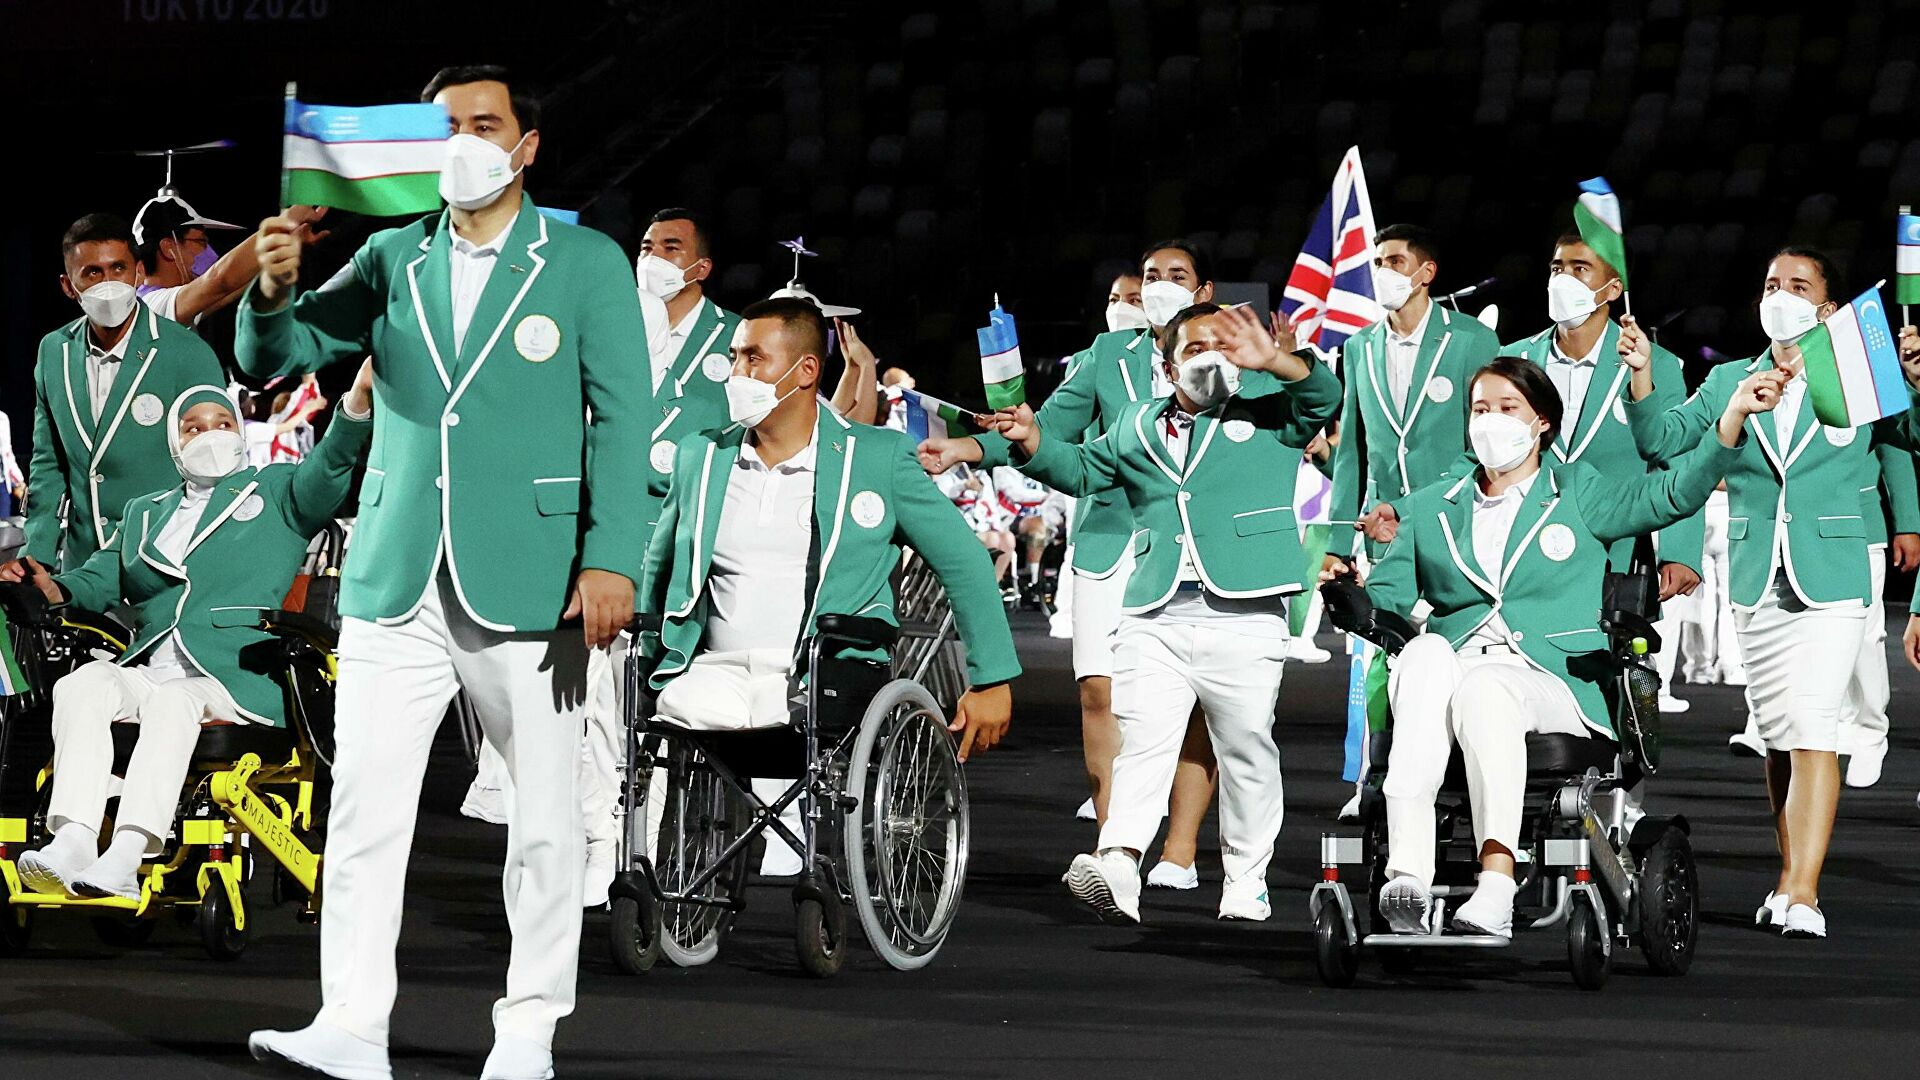 Узбекистан поднялся на 16 место в общем медальном зачете Паралимпиады-2020